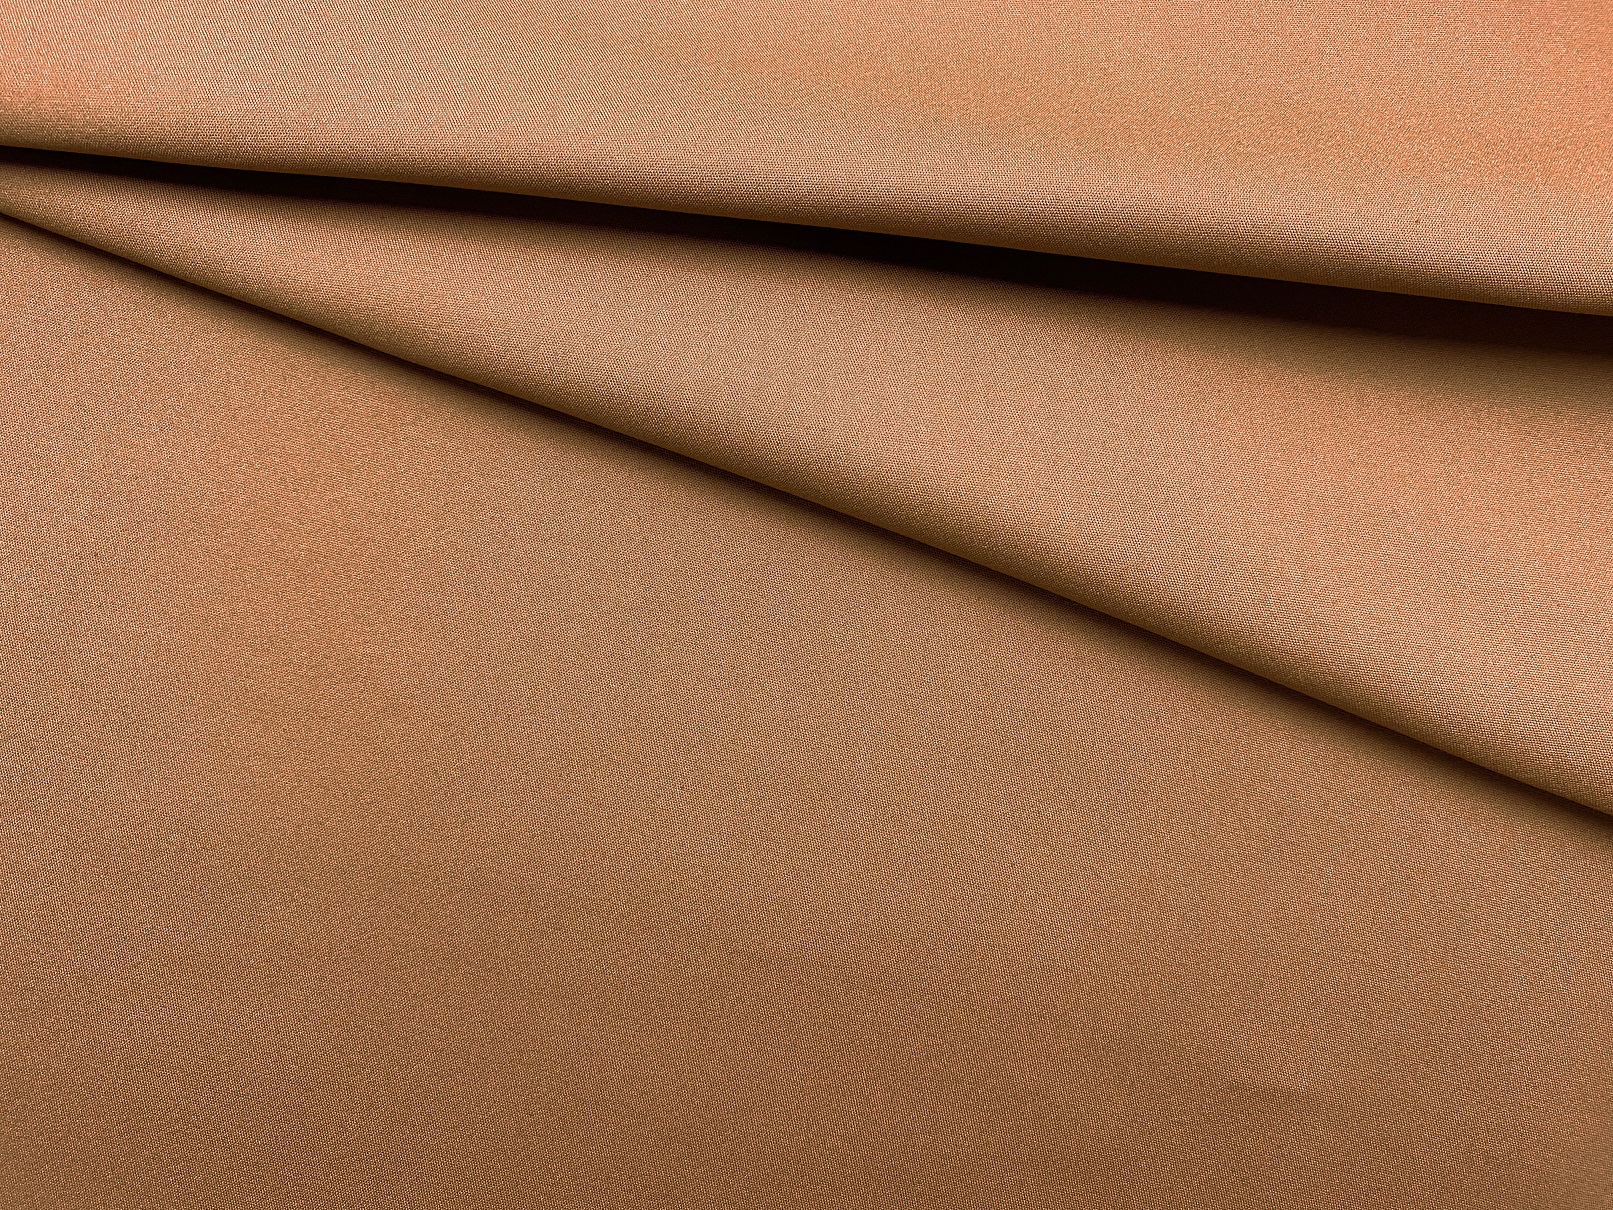 Ткань Хлопок цвета мокрый песок 16828 1